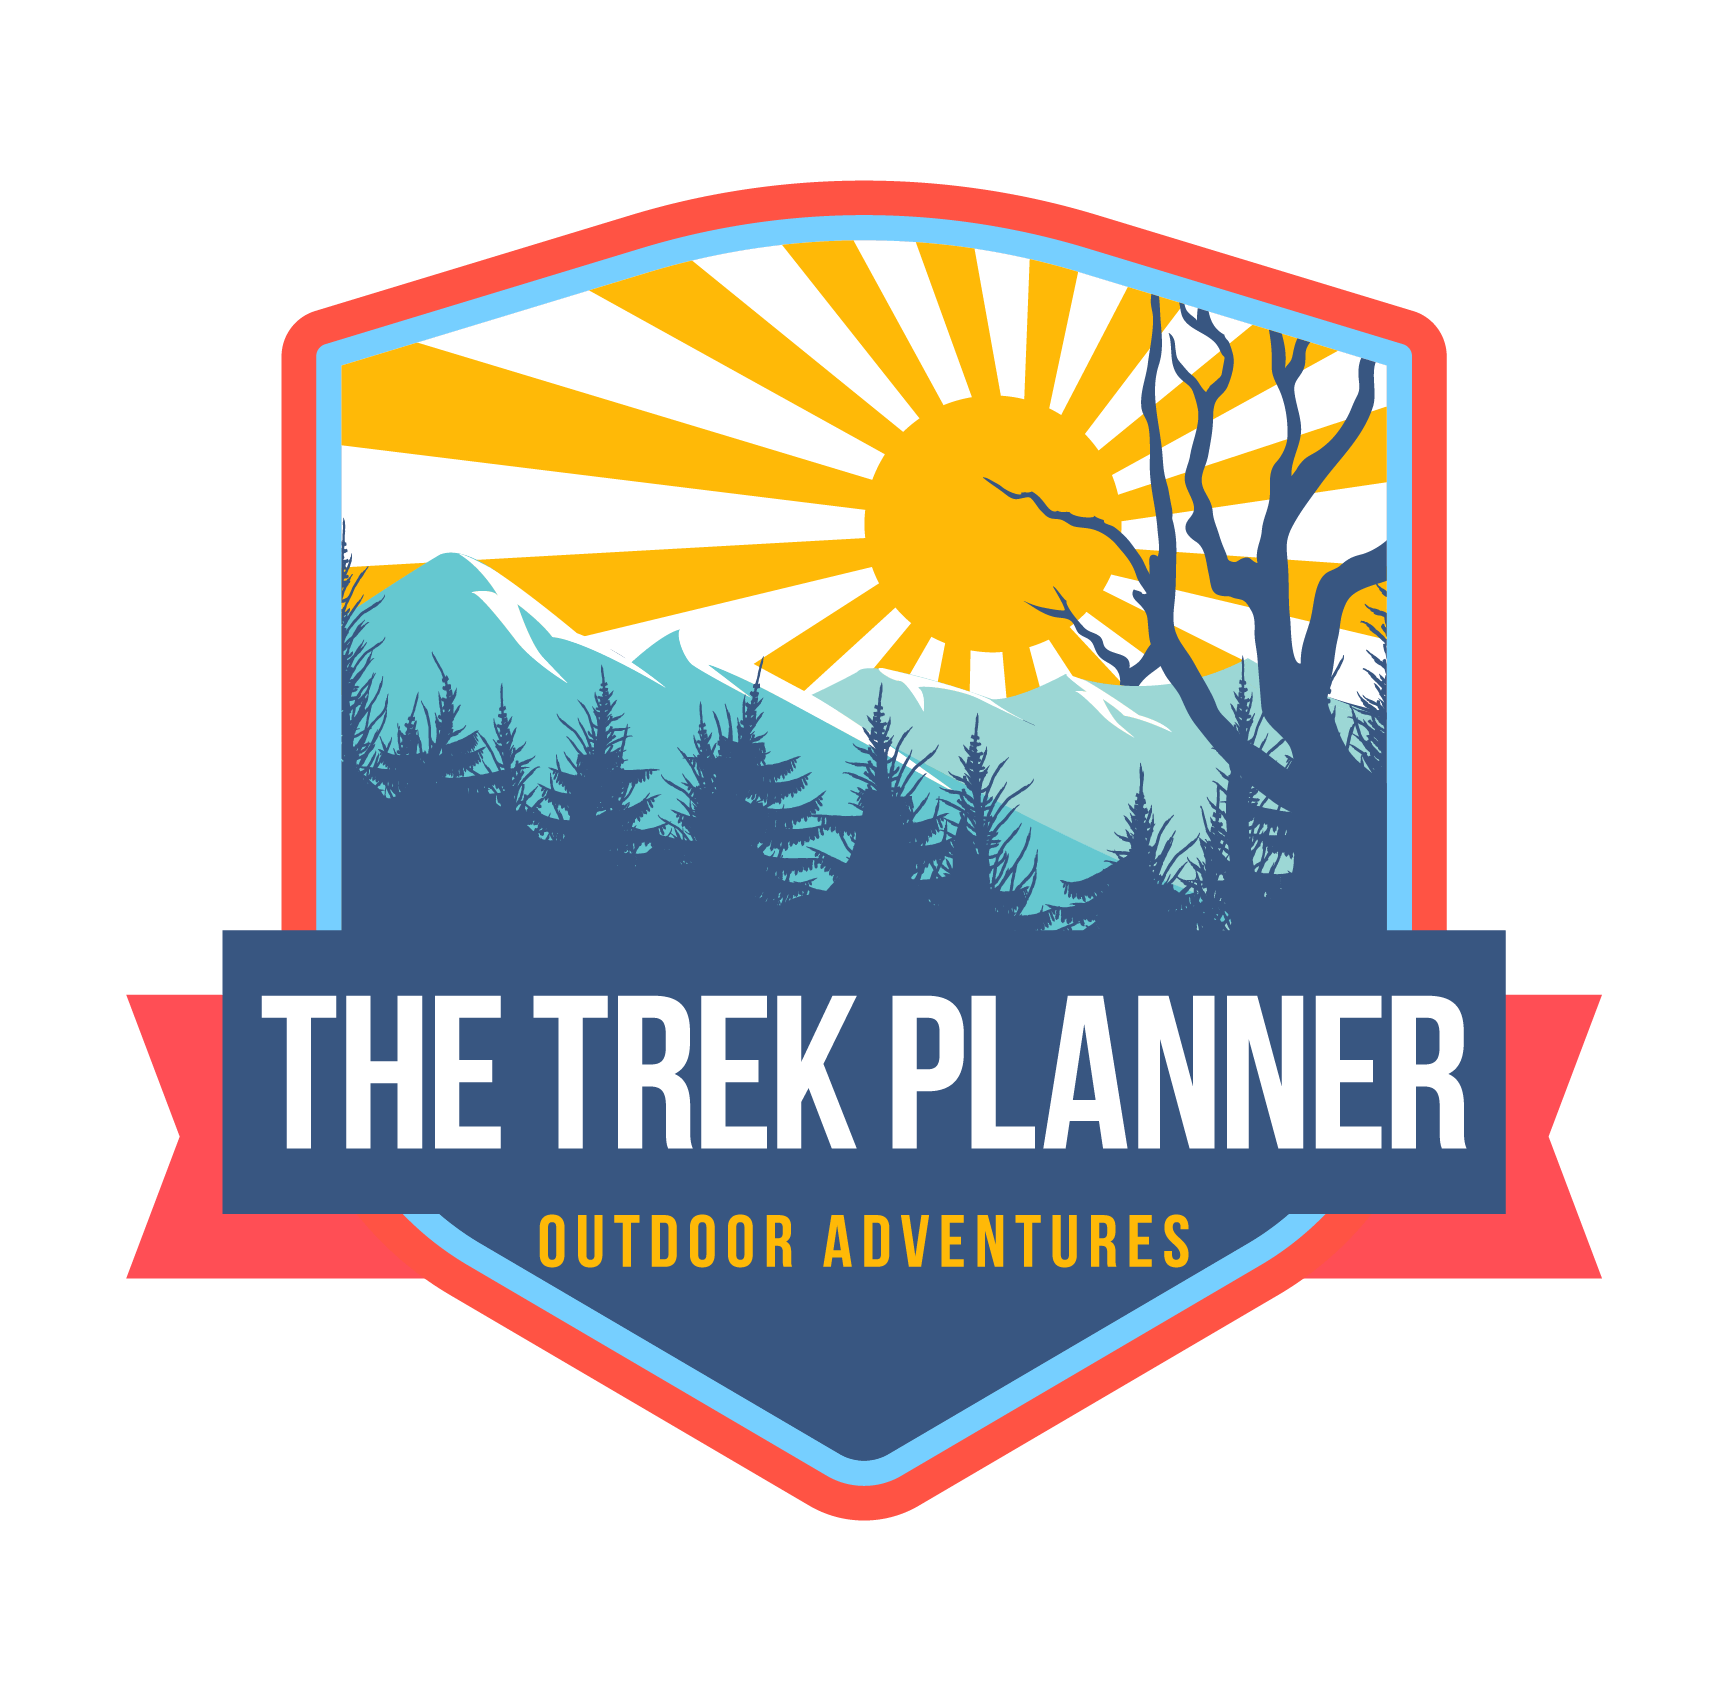 New Trek Planner Logo!